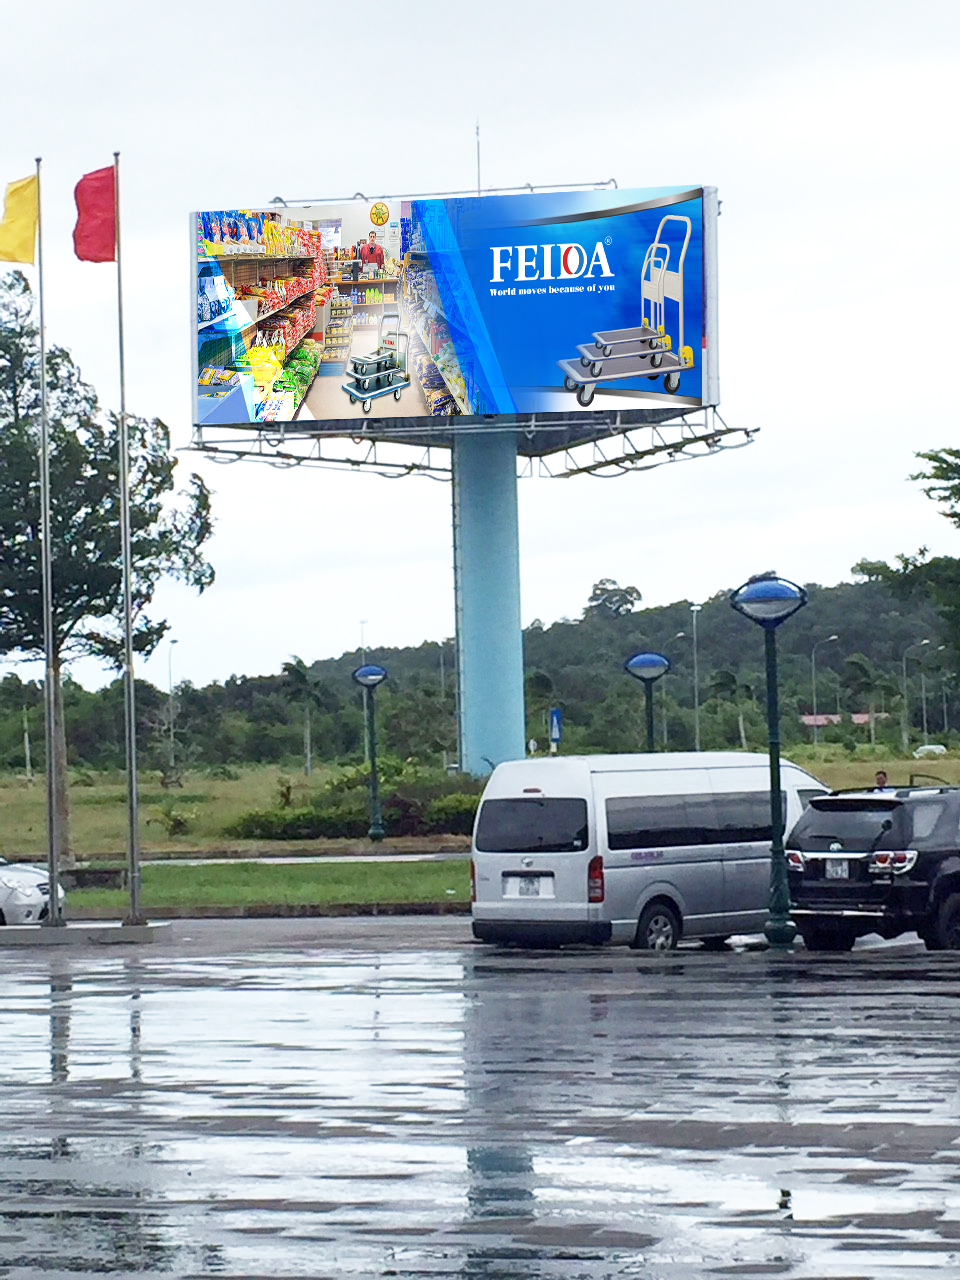 Xe đẩy hàng Feida tiếp tục chạy chương trình quảng cáo